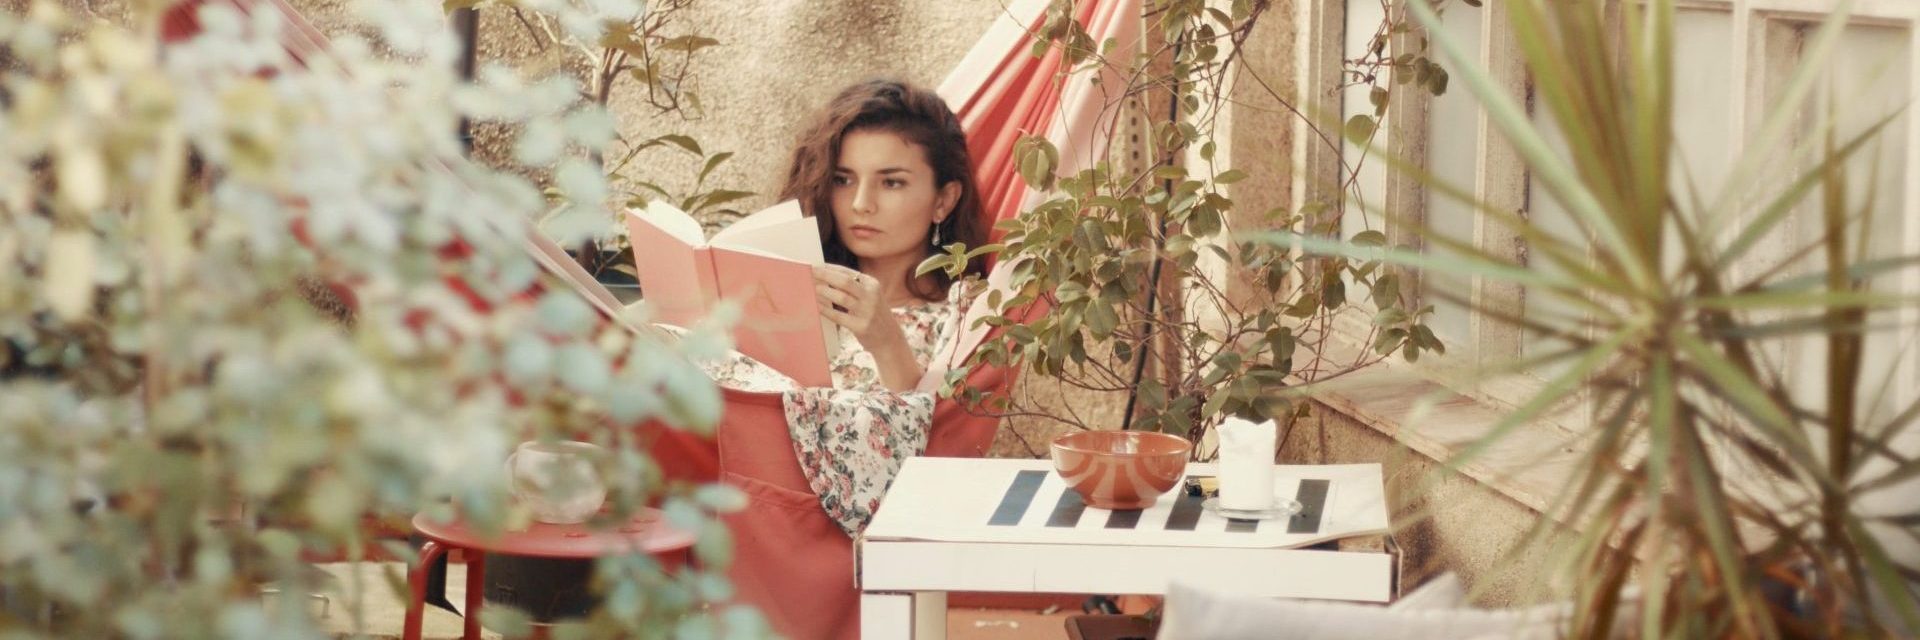 Eine Frau sitzt auf einem von Pflanzen umgebenen Balkon und liest ein Buch. Im Hintergrund sind ein Sonnenschirm und Gartenmöbel zu sehen.